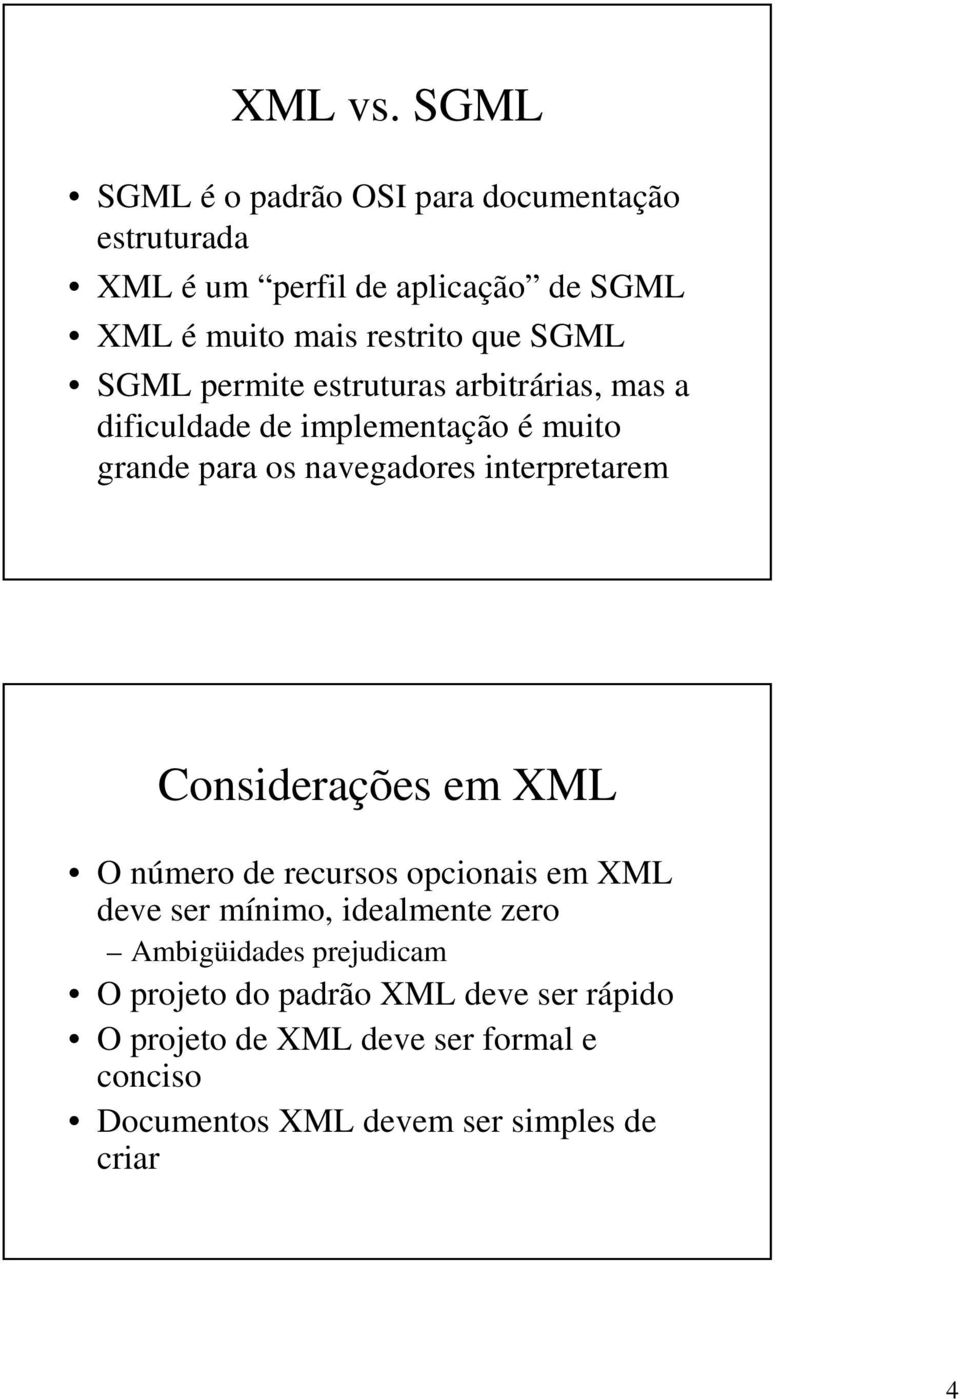 SGML SGML permite estruturas arbitrárias, mas a dificuldade de implementação é muito grande para os navegadores